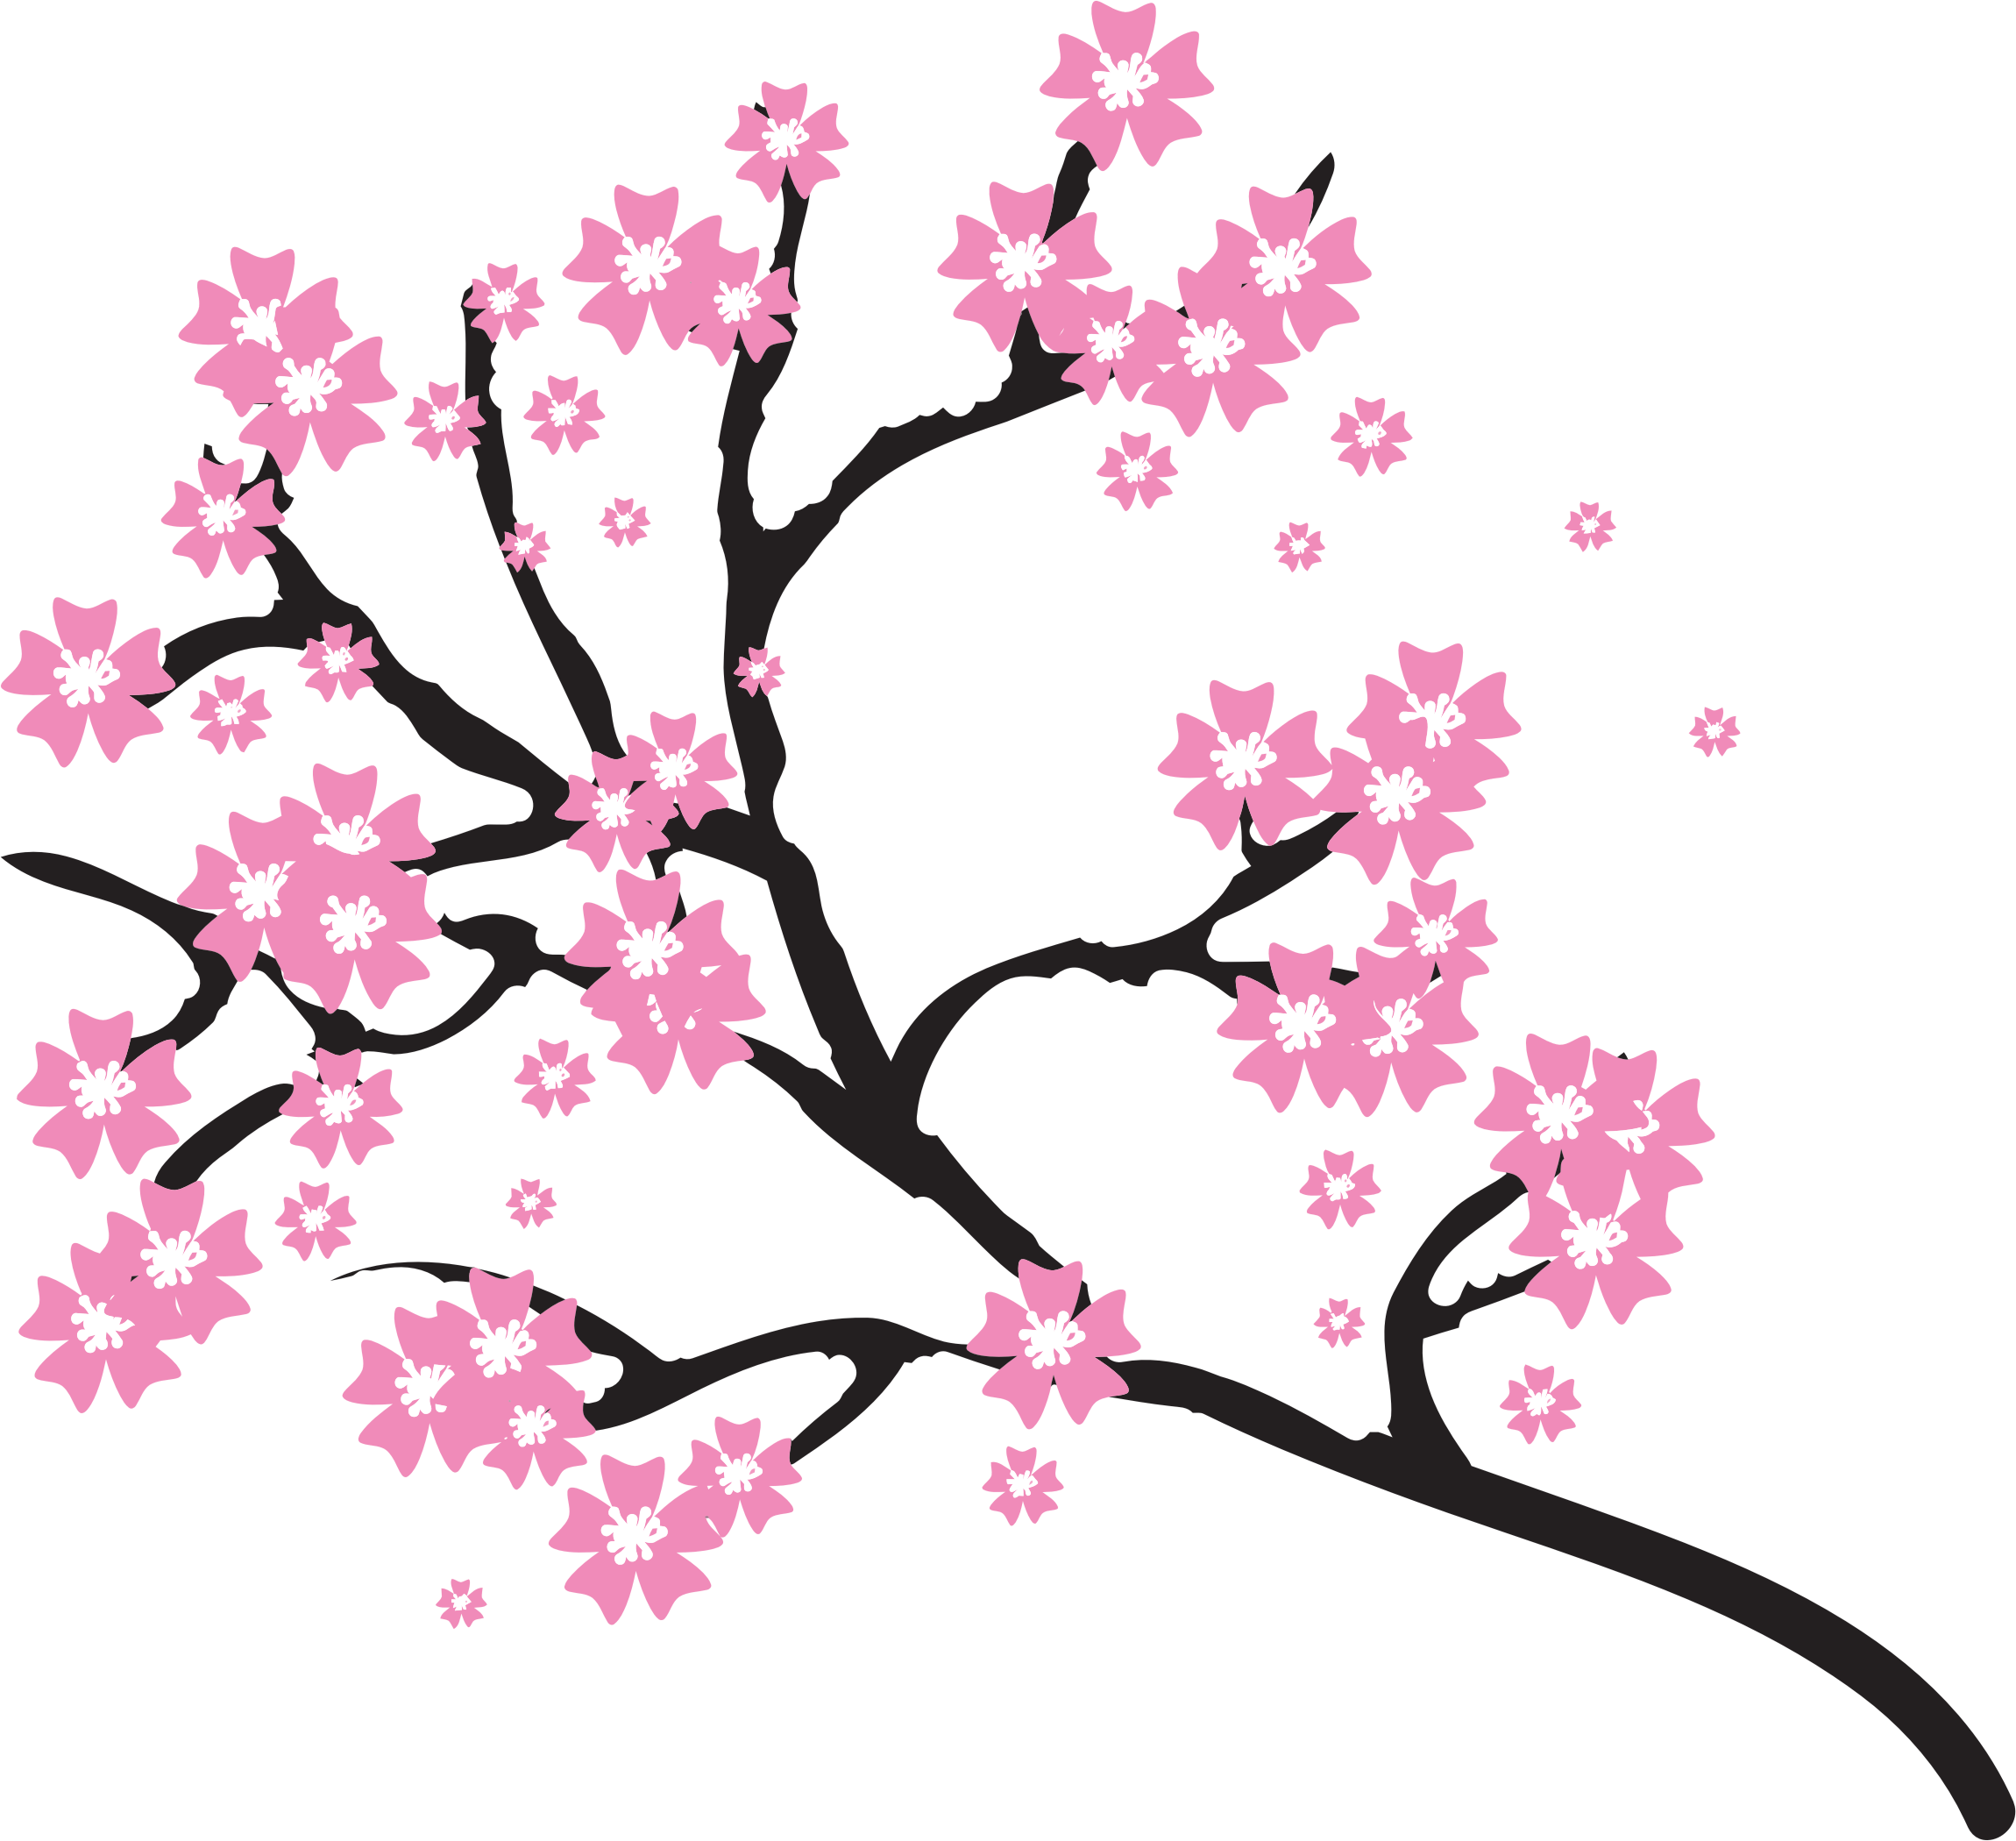 Imagen PNG de la flor de cerezo